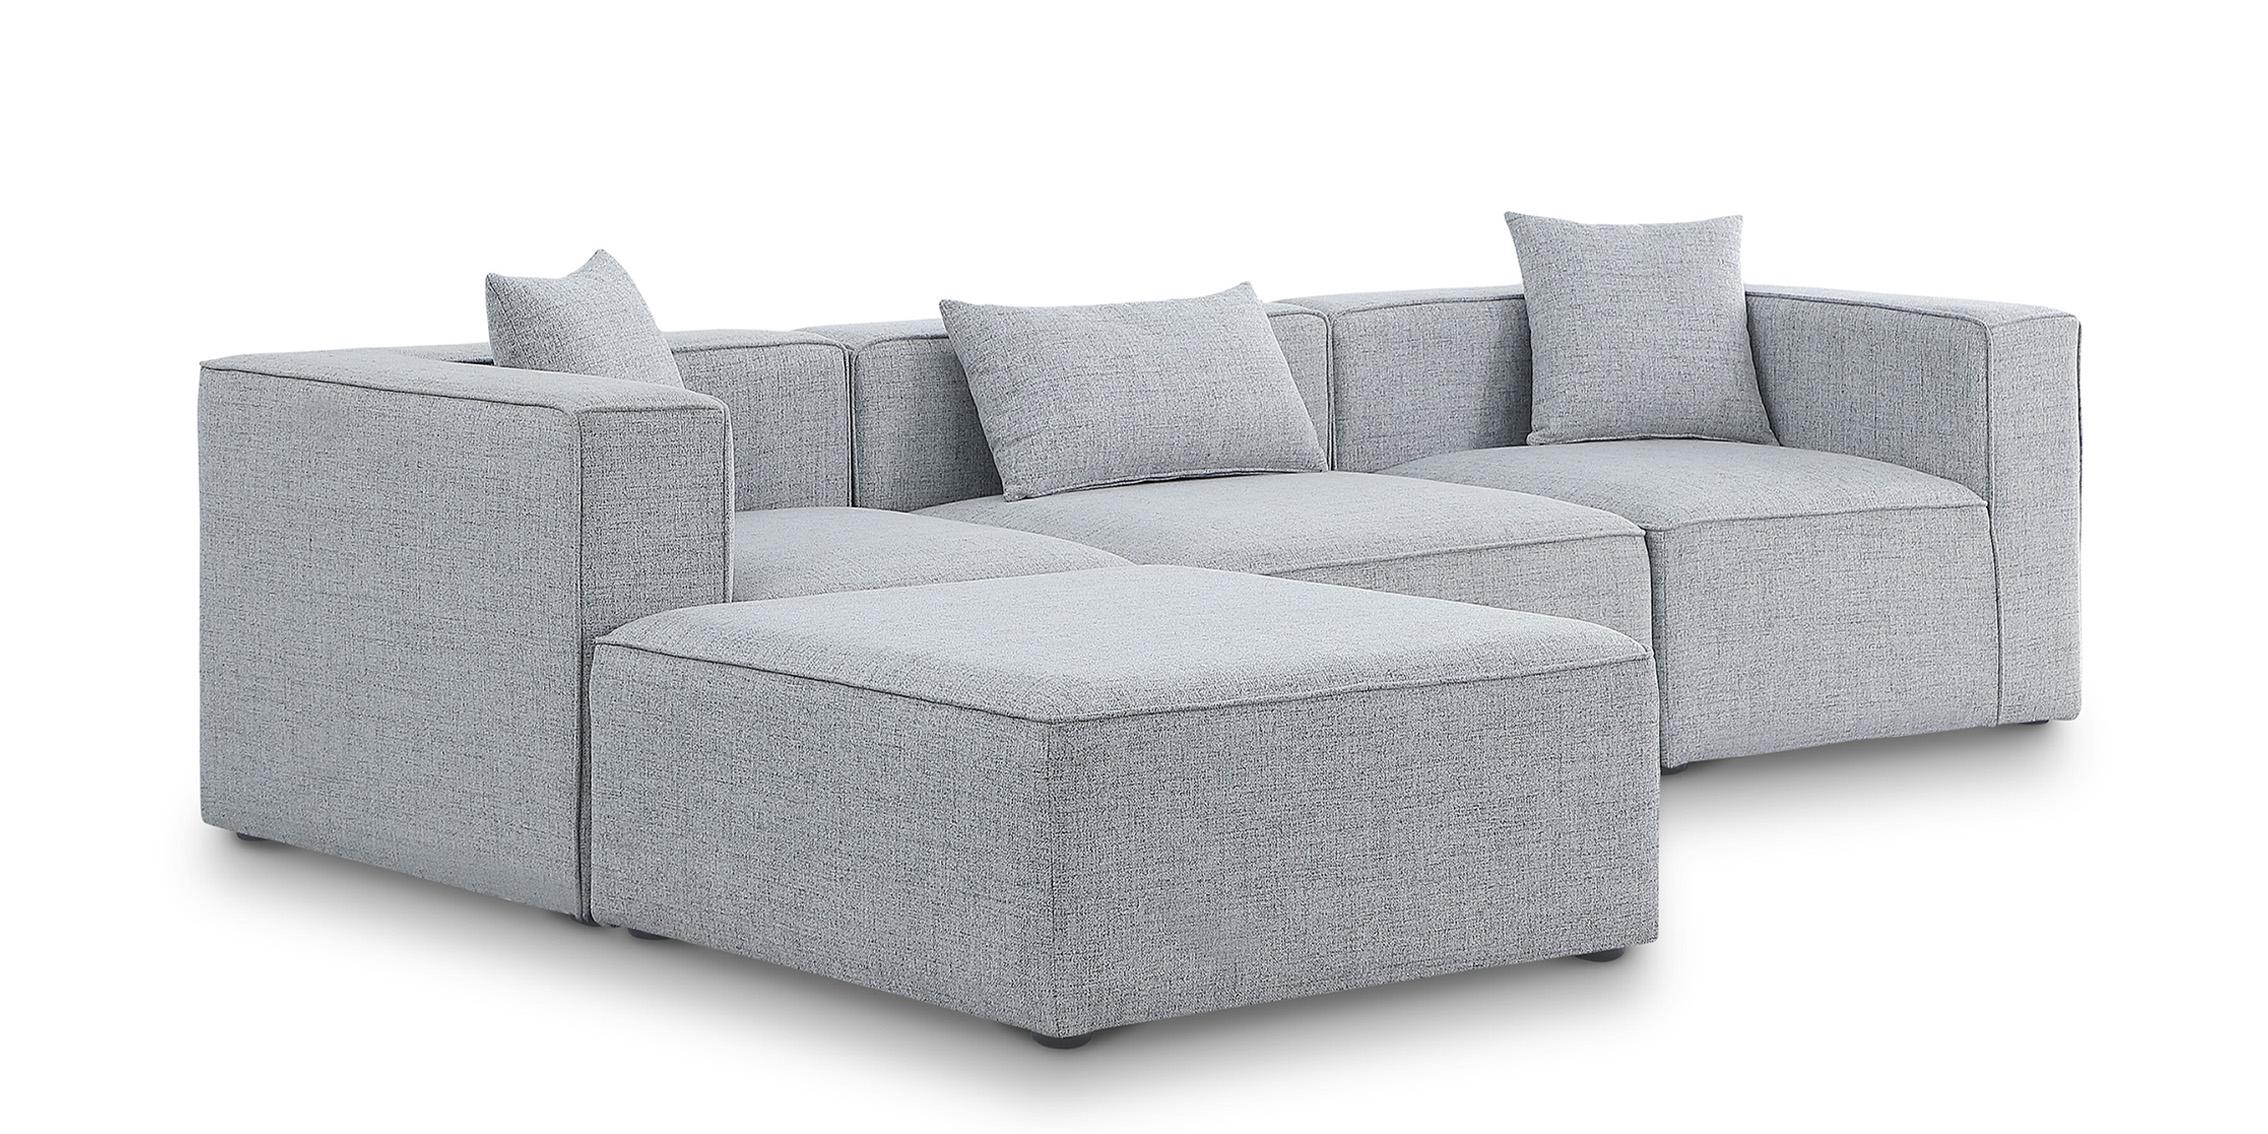 Contemporary, Modern Modular Sectional Sofa CUBE 630Grey-Sec4A 630Grey-Sec4A in Gray Linen